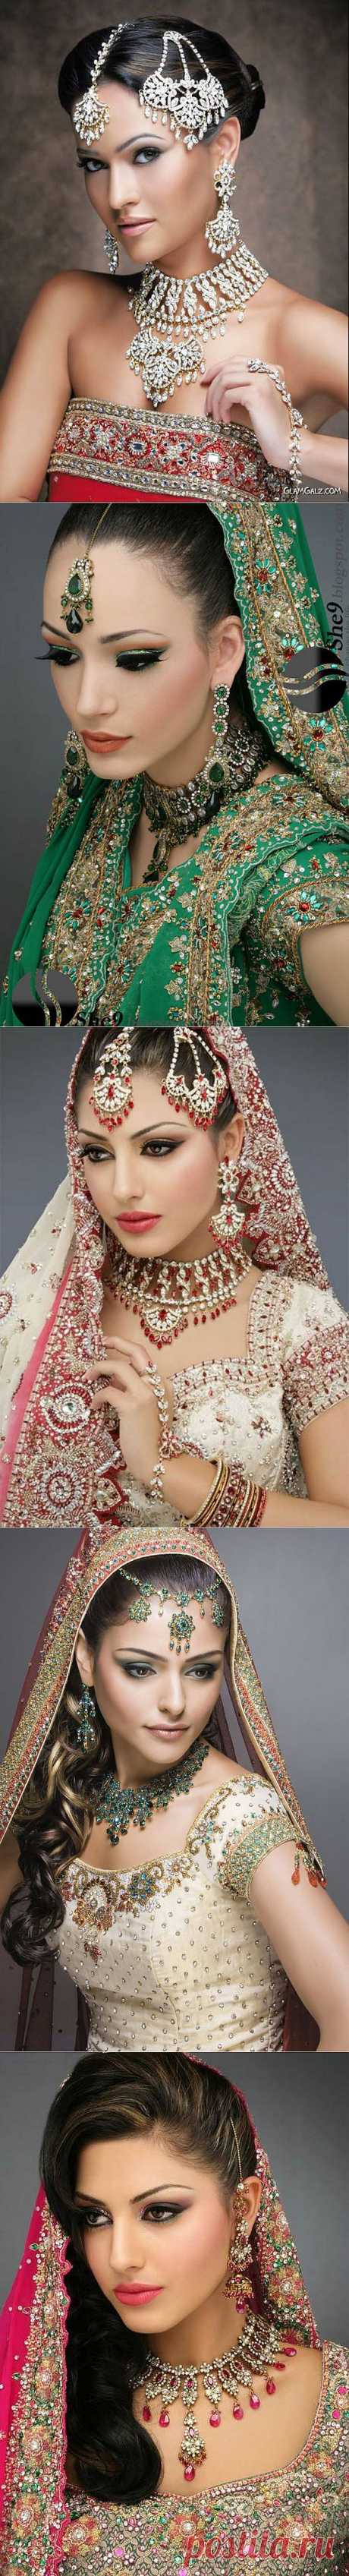 Красивые индийские невесты | Newpix.ru - позитивный интернет-журнал